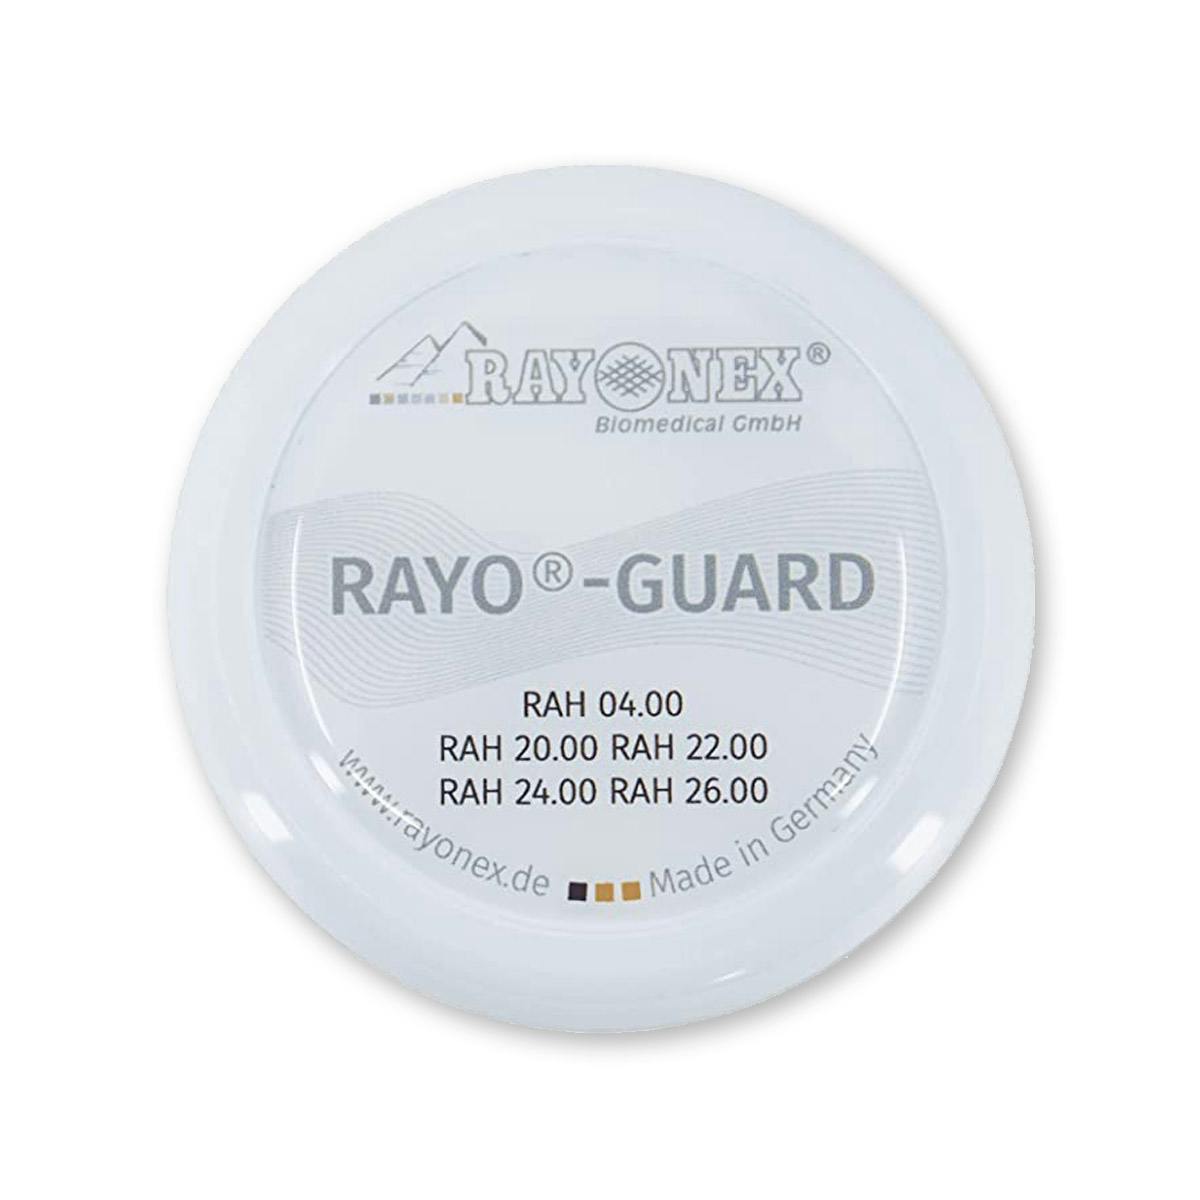 Rayo®-Guard